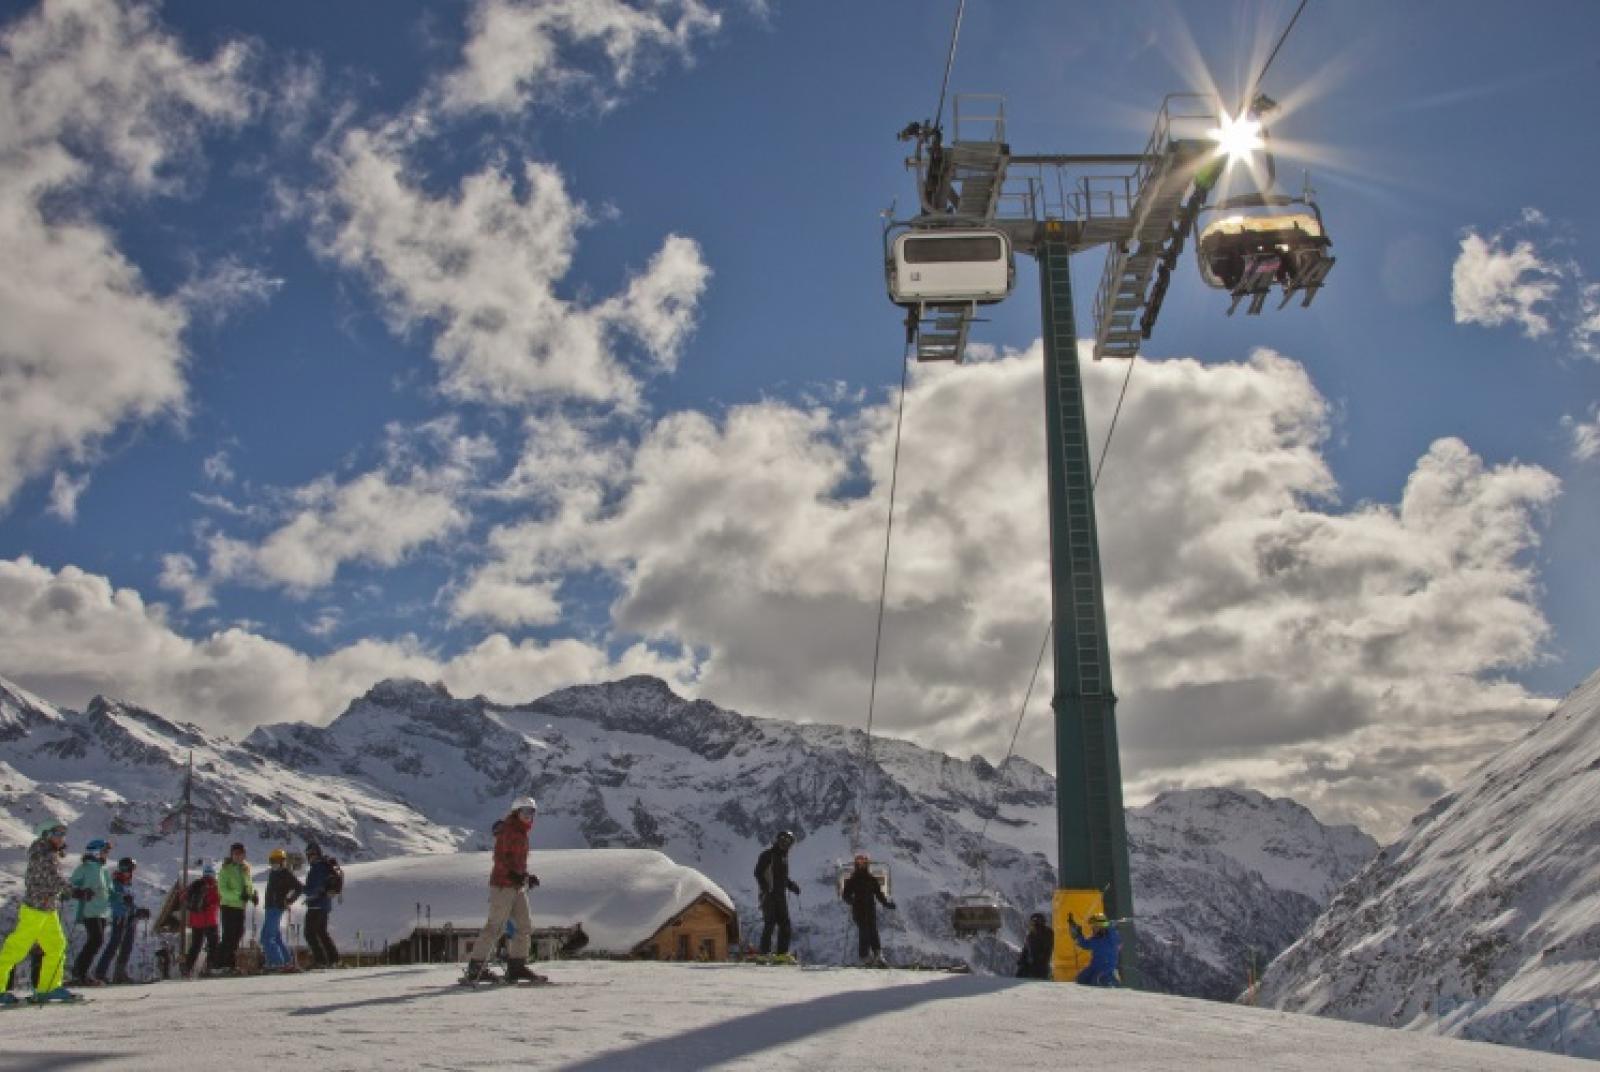 Forfaits Saisonniers Monterosa Ski: disponibles en ligne et aux guichets